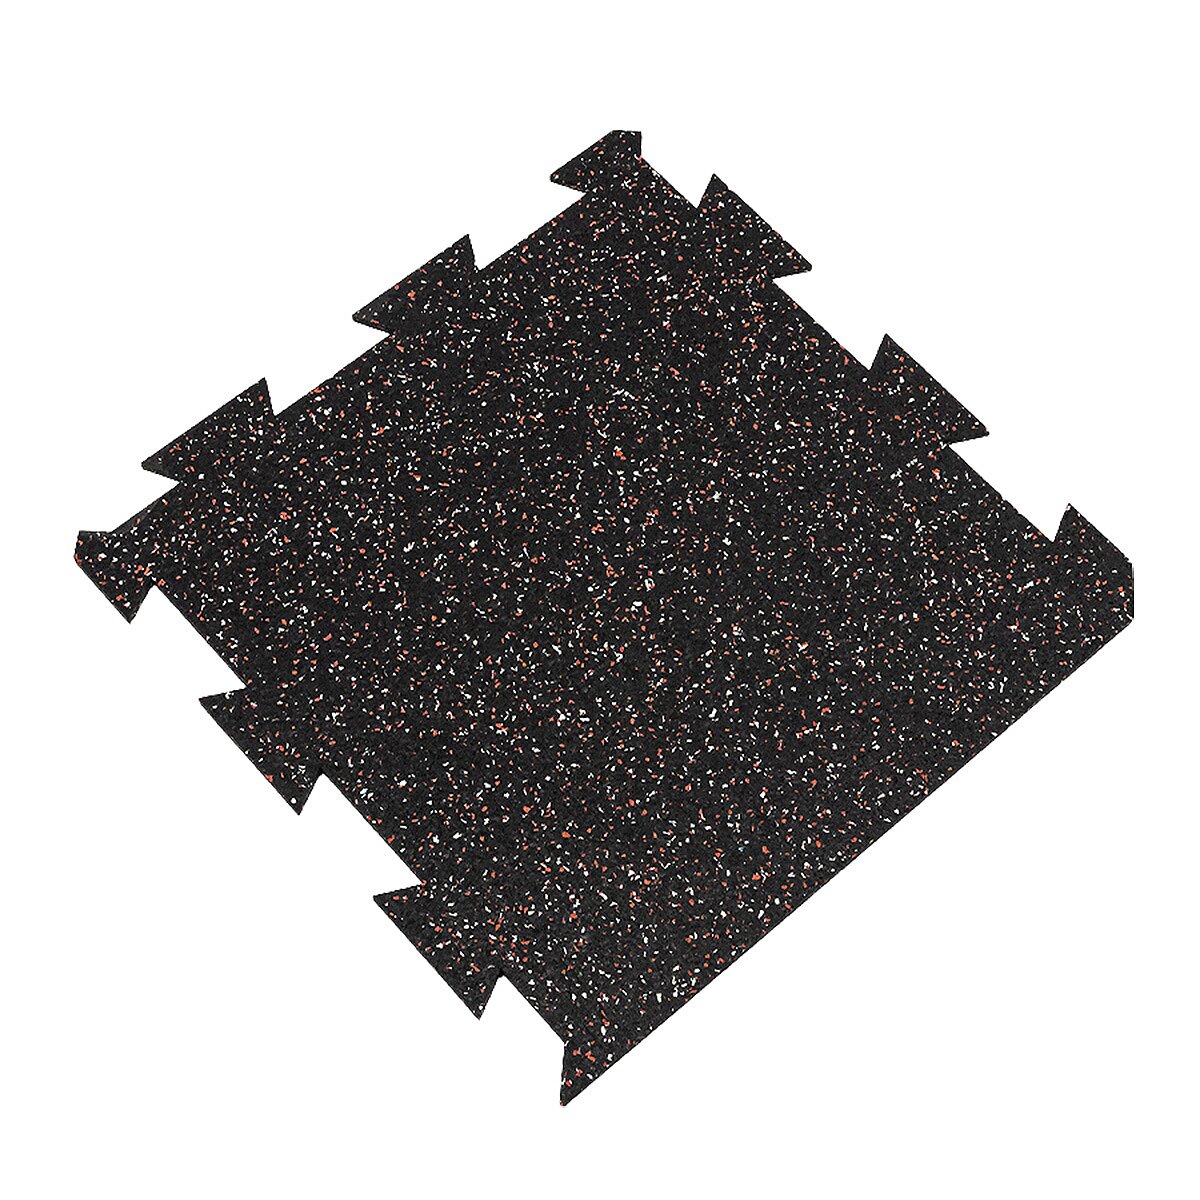 Černo-bílo-červená gumová puzzle modulová dlažba FLOMA SF1050 FitFlo - délka 50 cm, šířka 50 cm, výška 0,8 cm